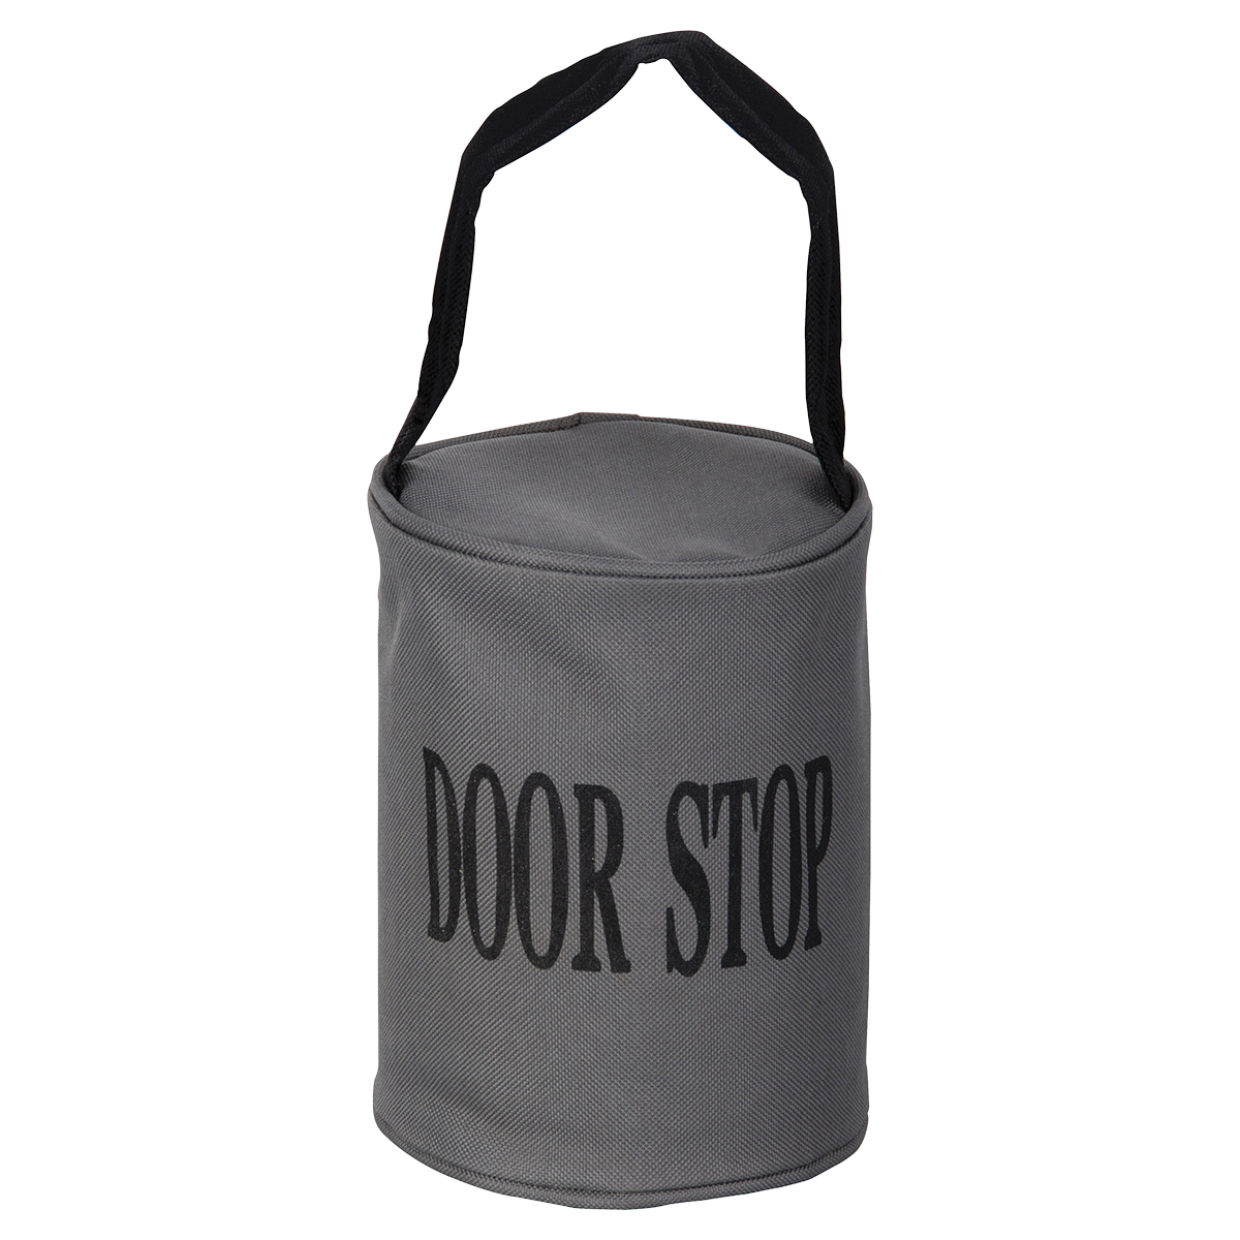 stoper do drzwi "Door stop"